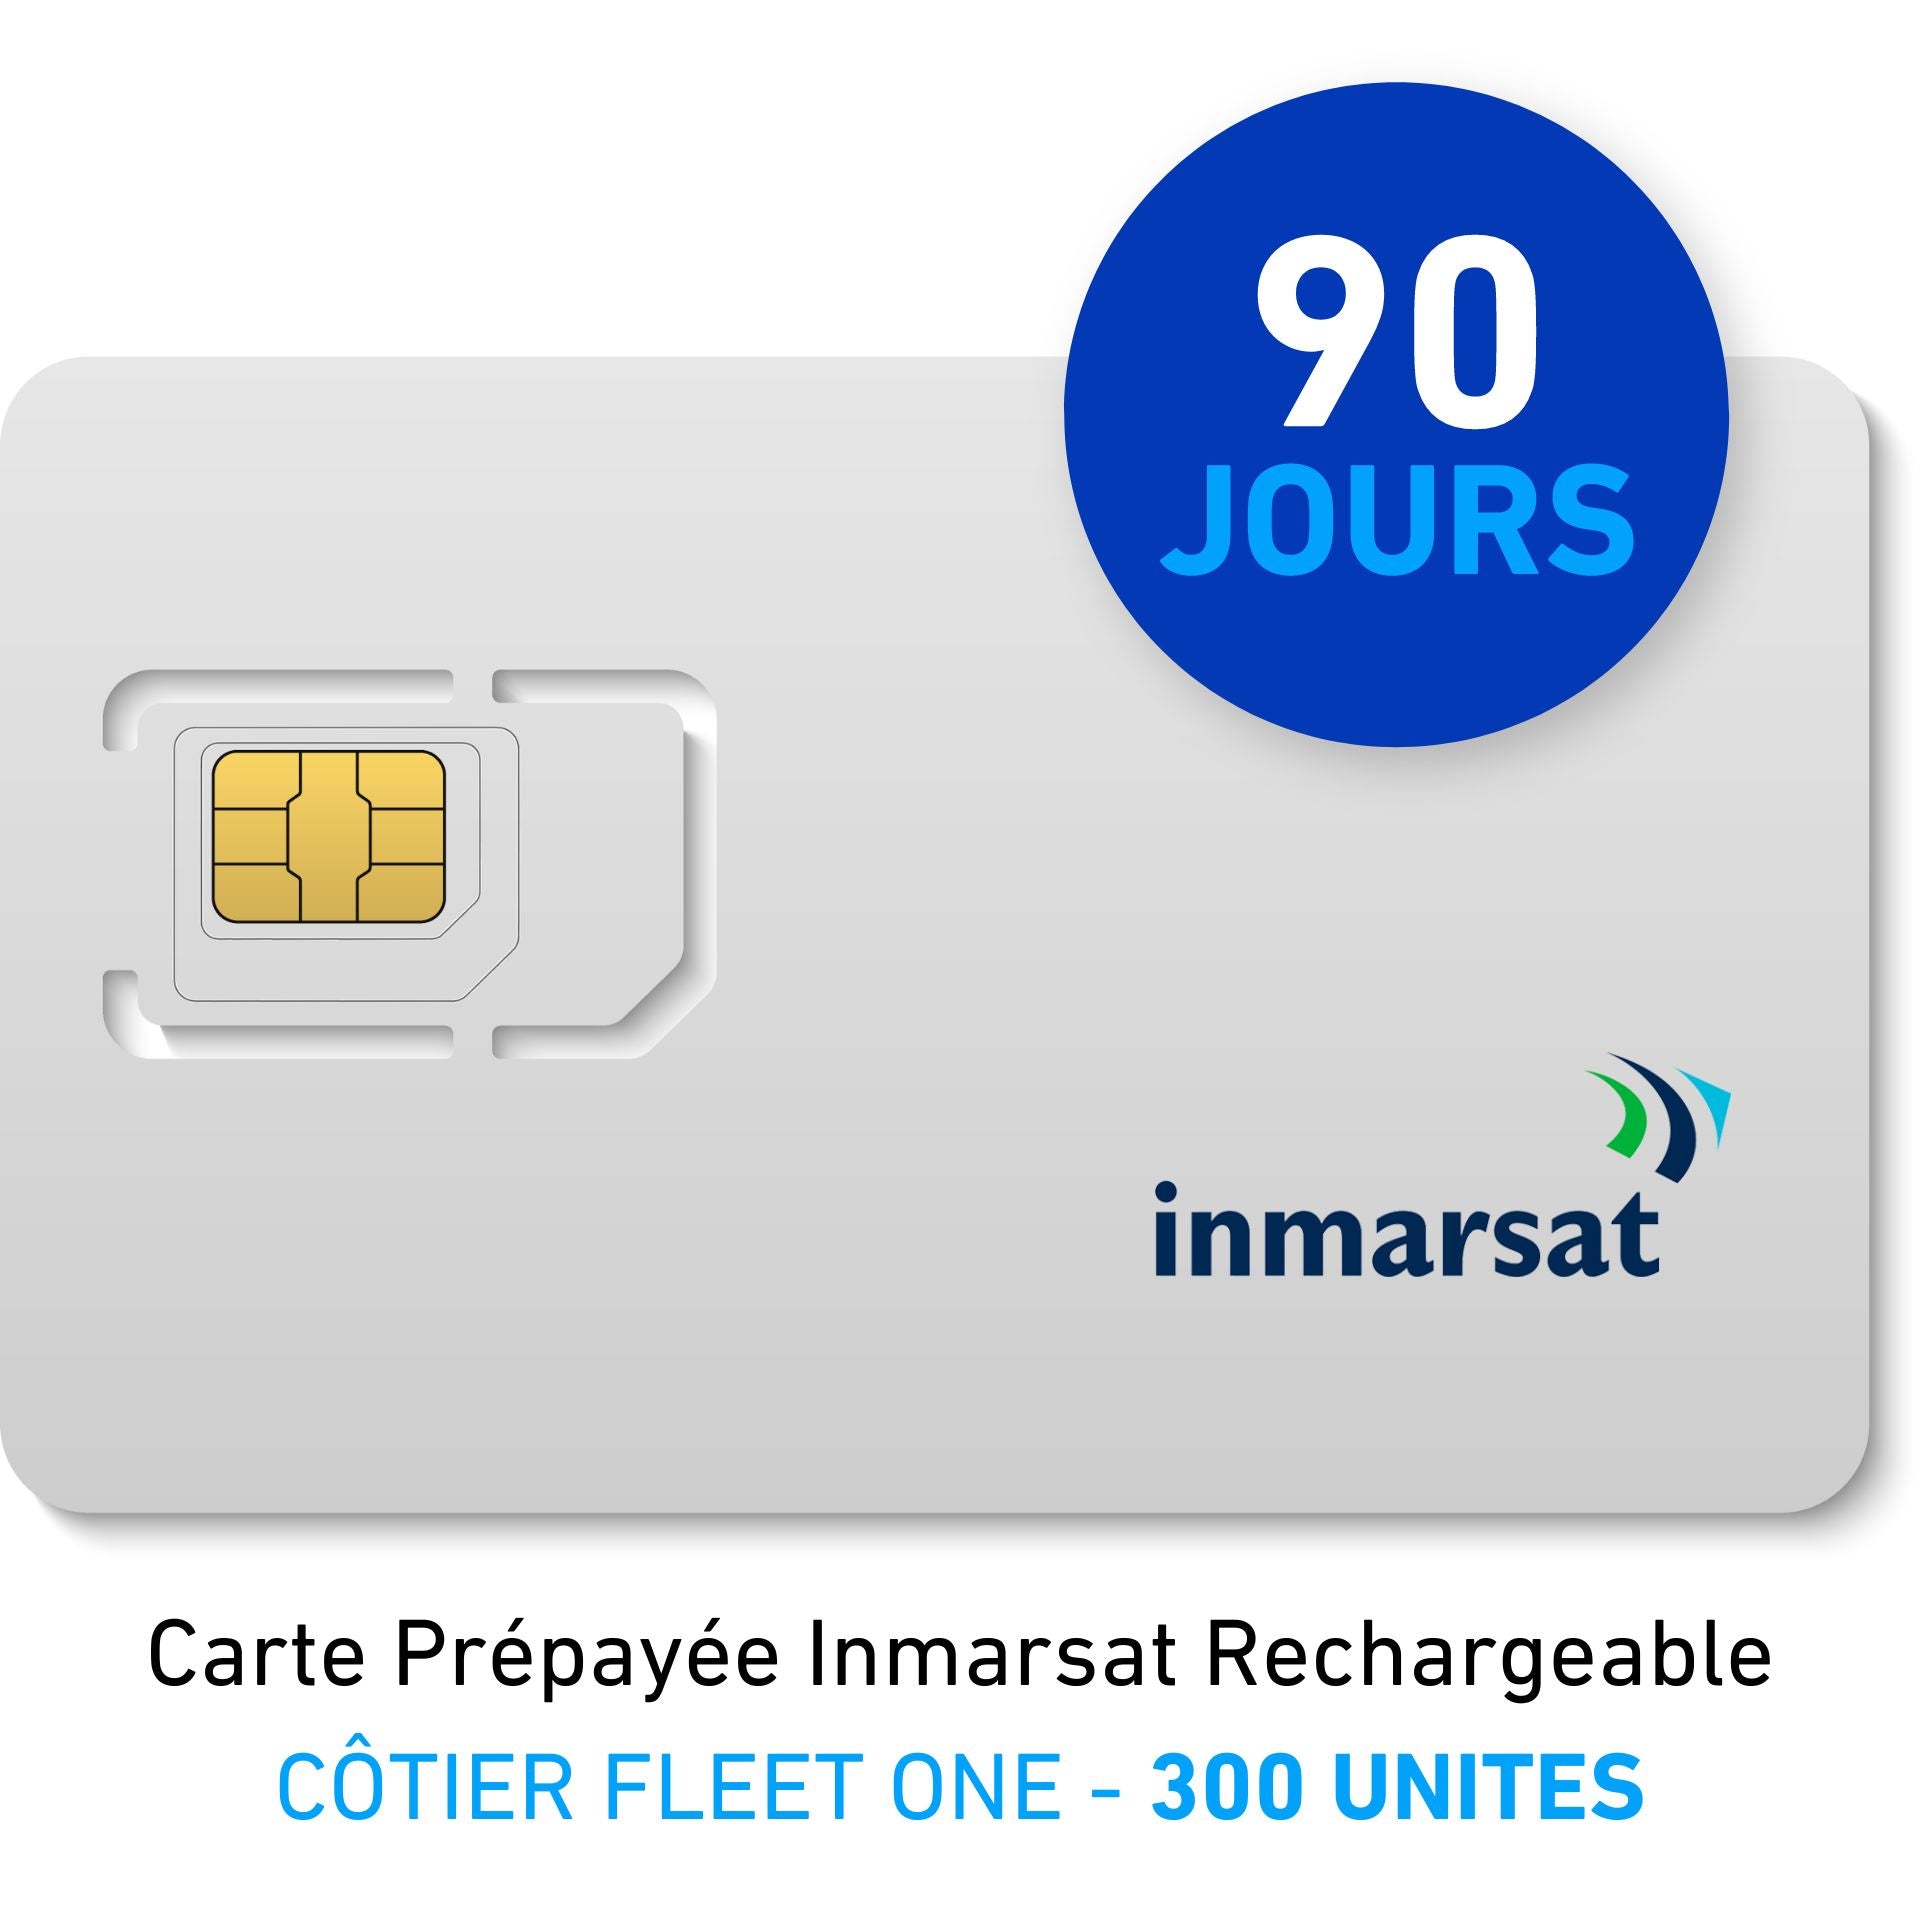 Carte Prépayée INMARSAT Rechargeable CÔTIER FLEET ONE - 300 UNITES - 90 JOURS